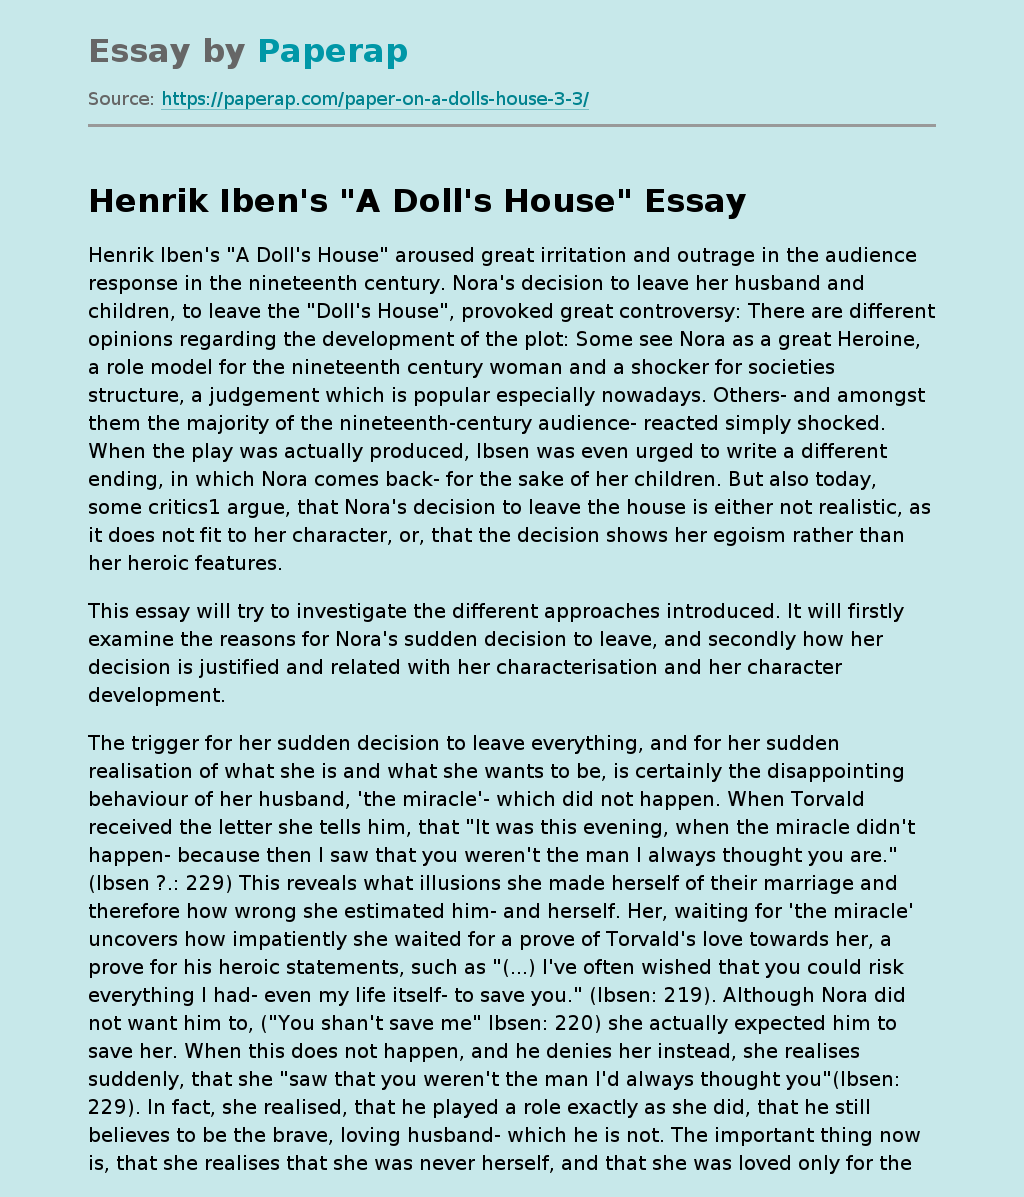 Henrik Iben's "A Doll's House"